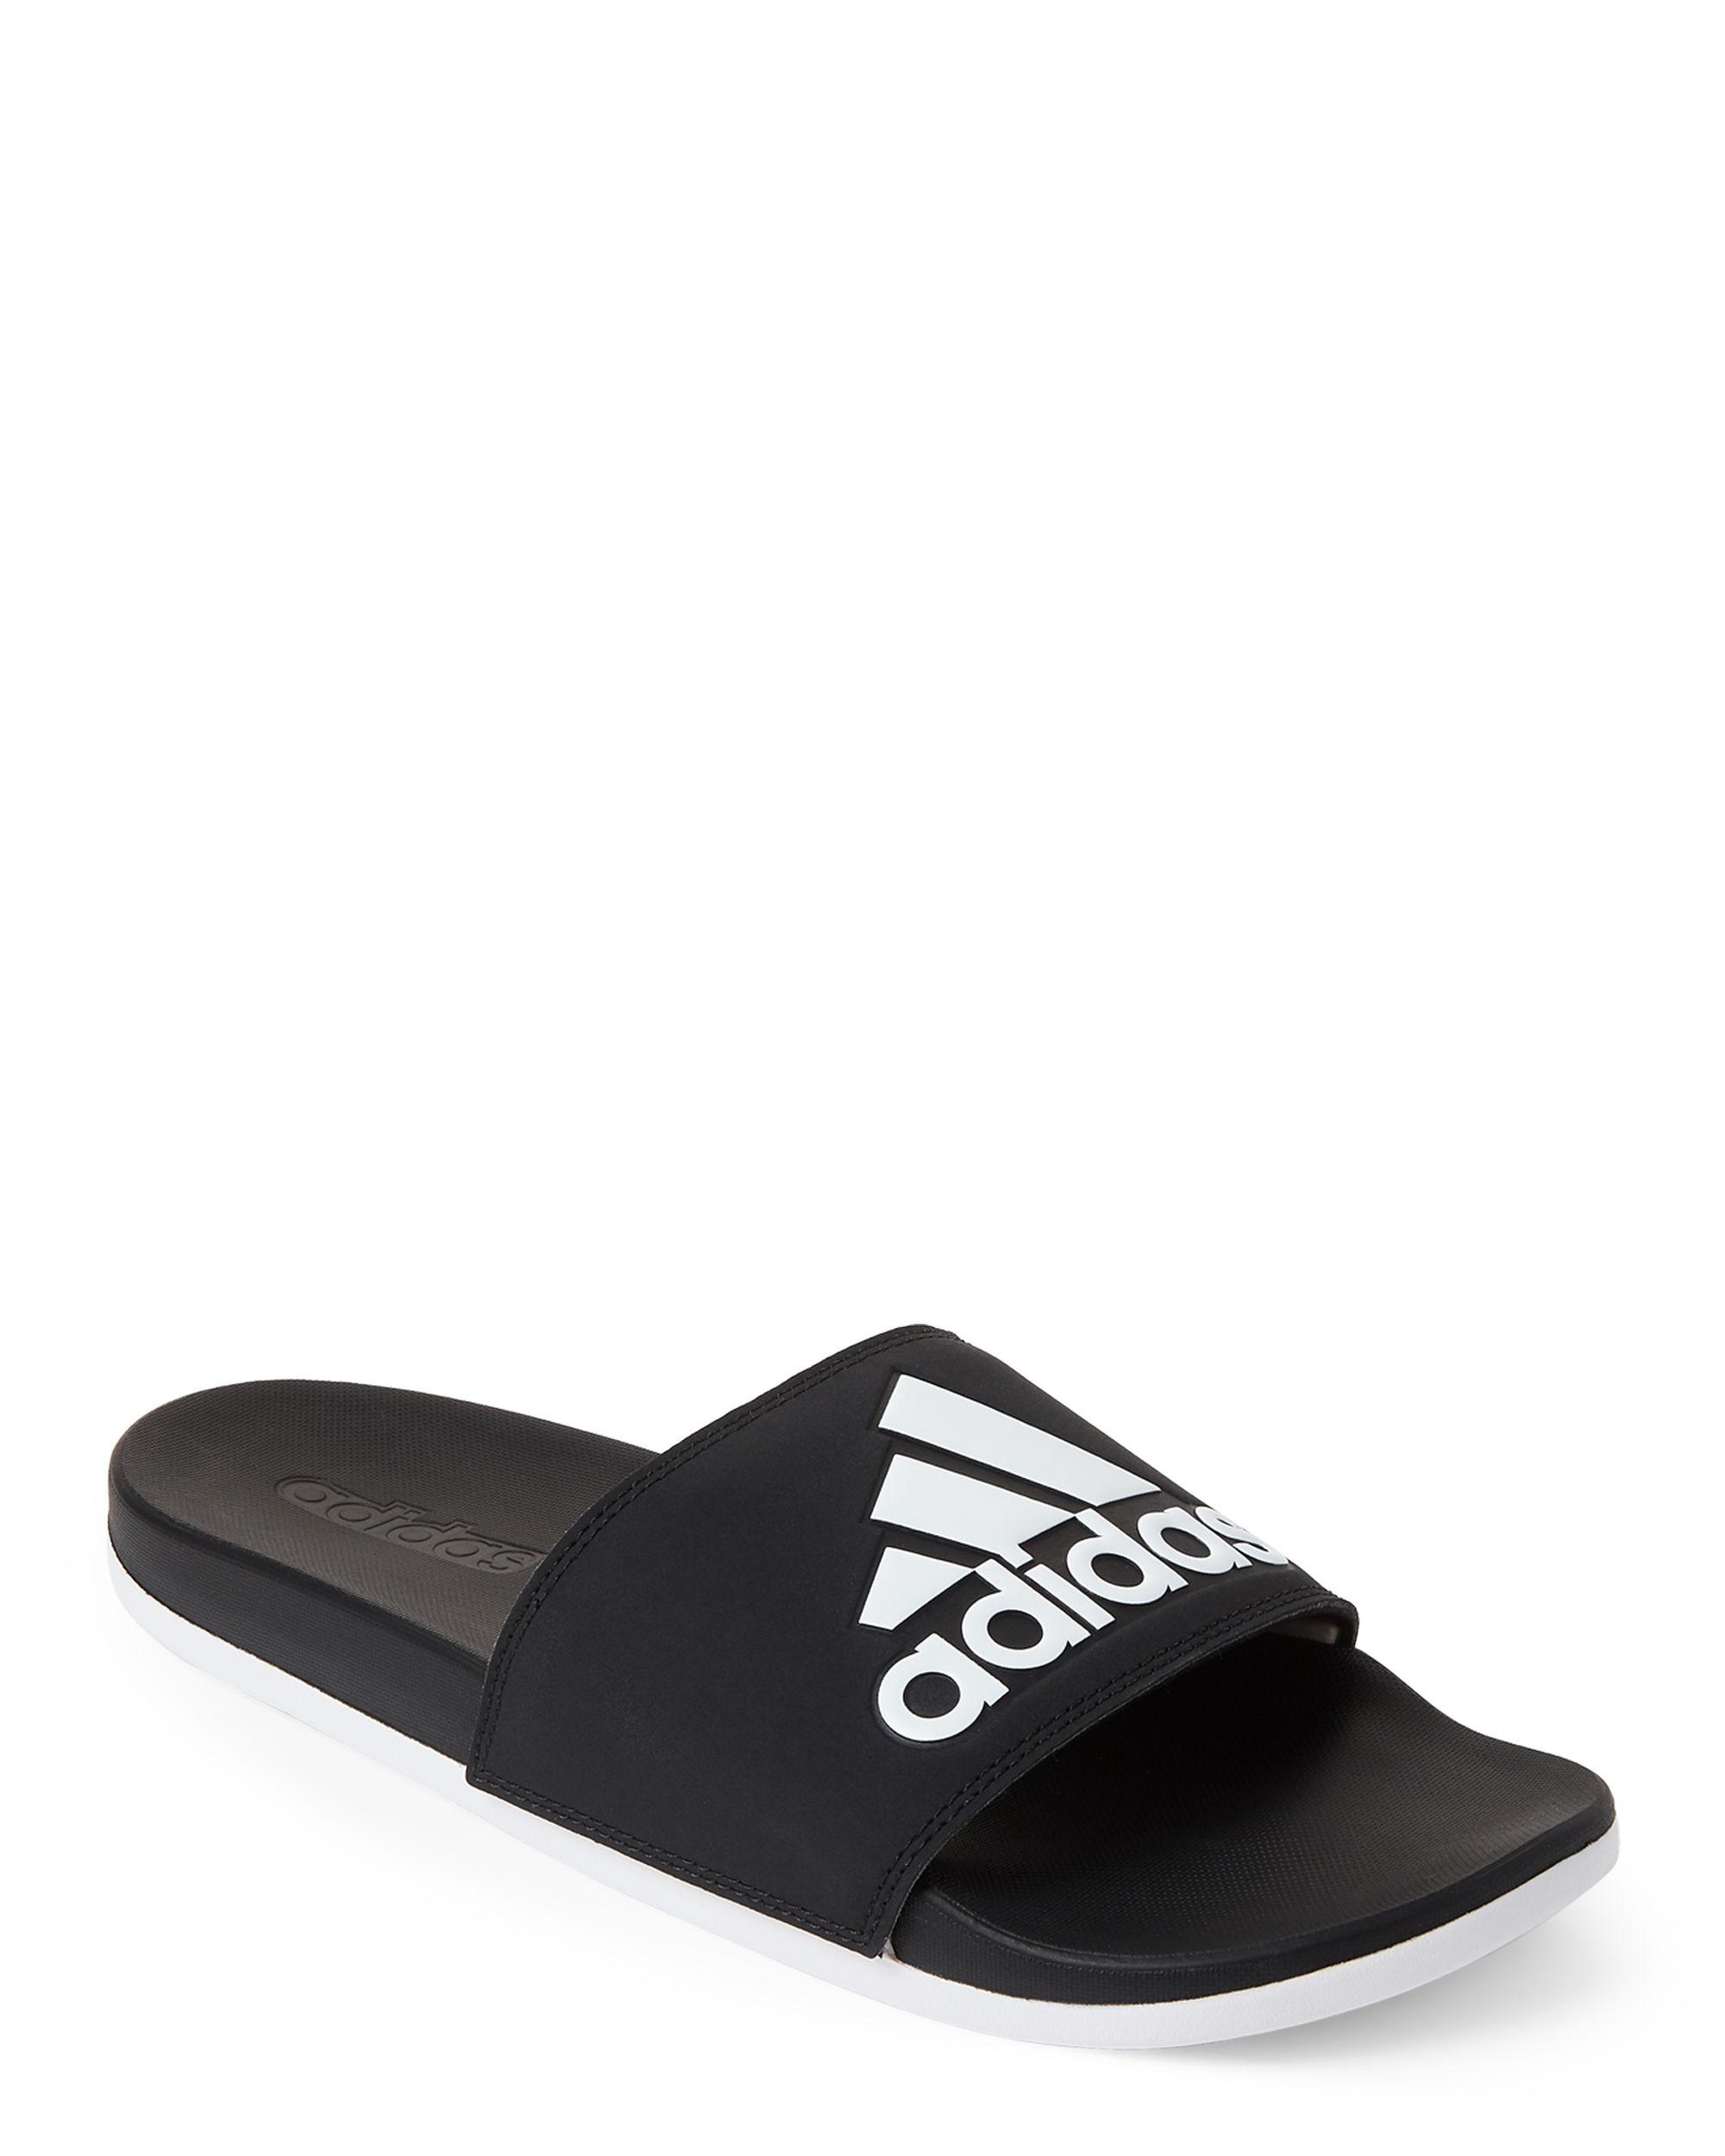 adidas Black & White Adilette Comfort Slide Sandals in Black for Men - Lyst